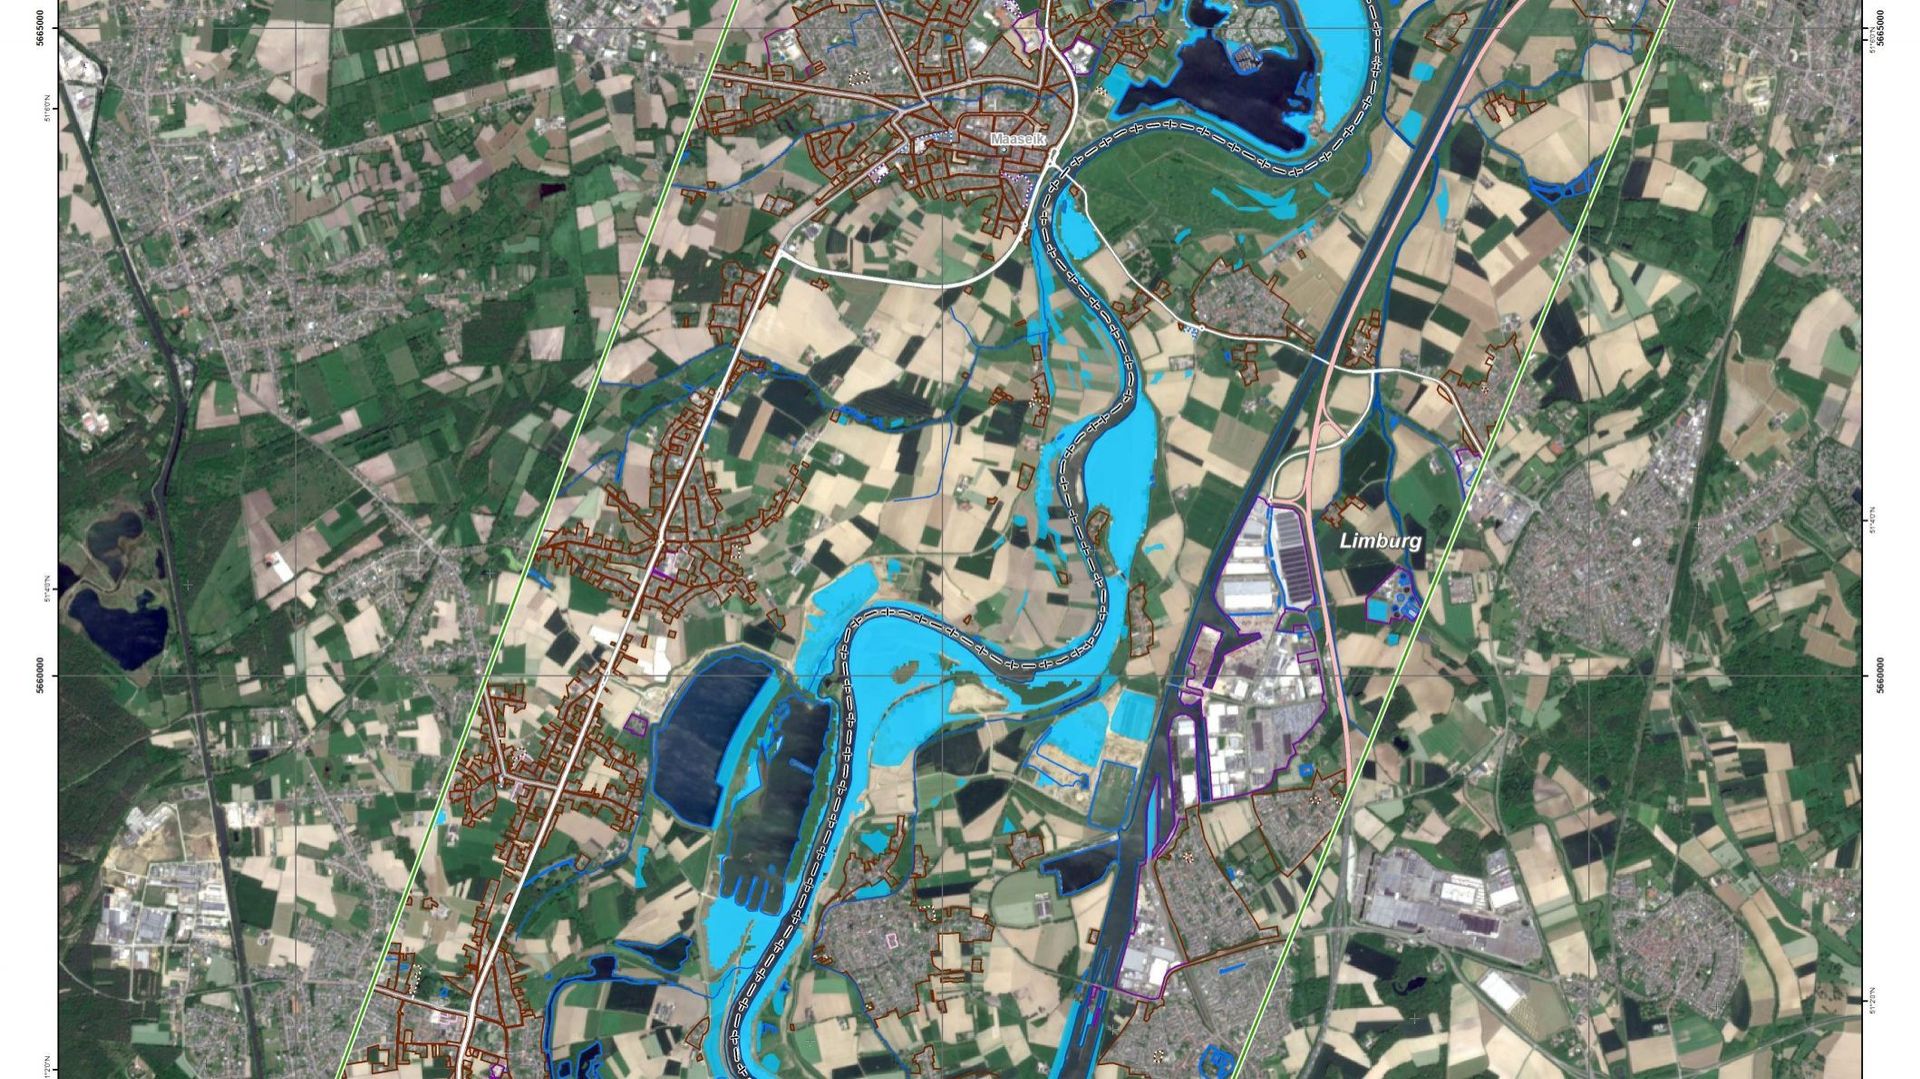 Ces images satellites montrent la Meuse entre Liège et Maastricht le 14 juillet 2021.